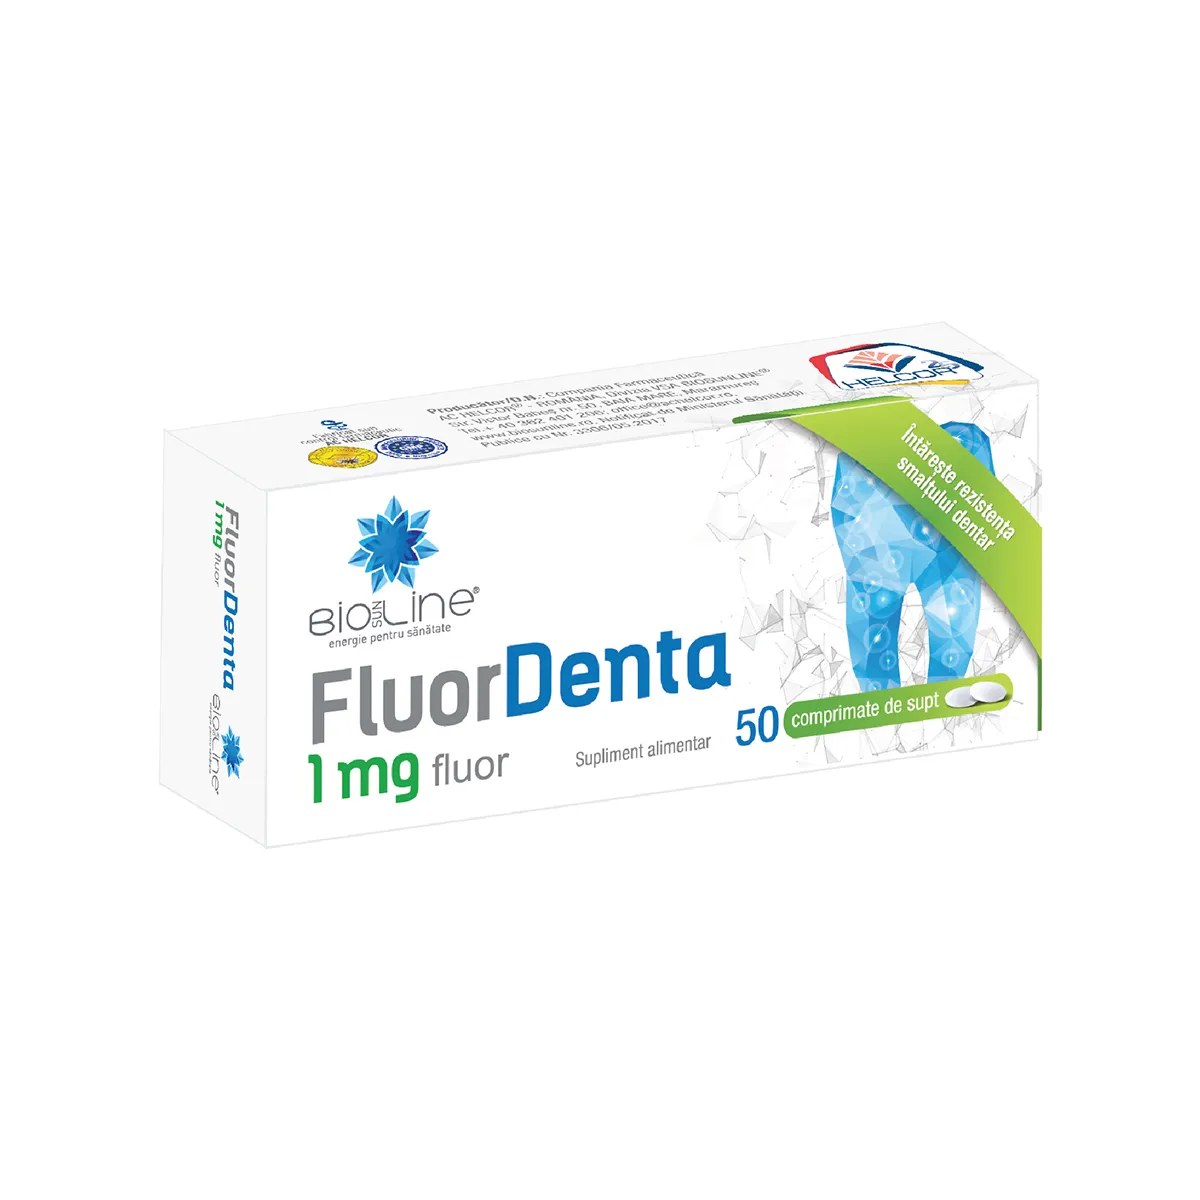 Fluor Denta 1mg, 50 comprimate de supt, BioSunLine